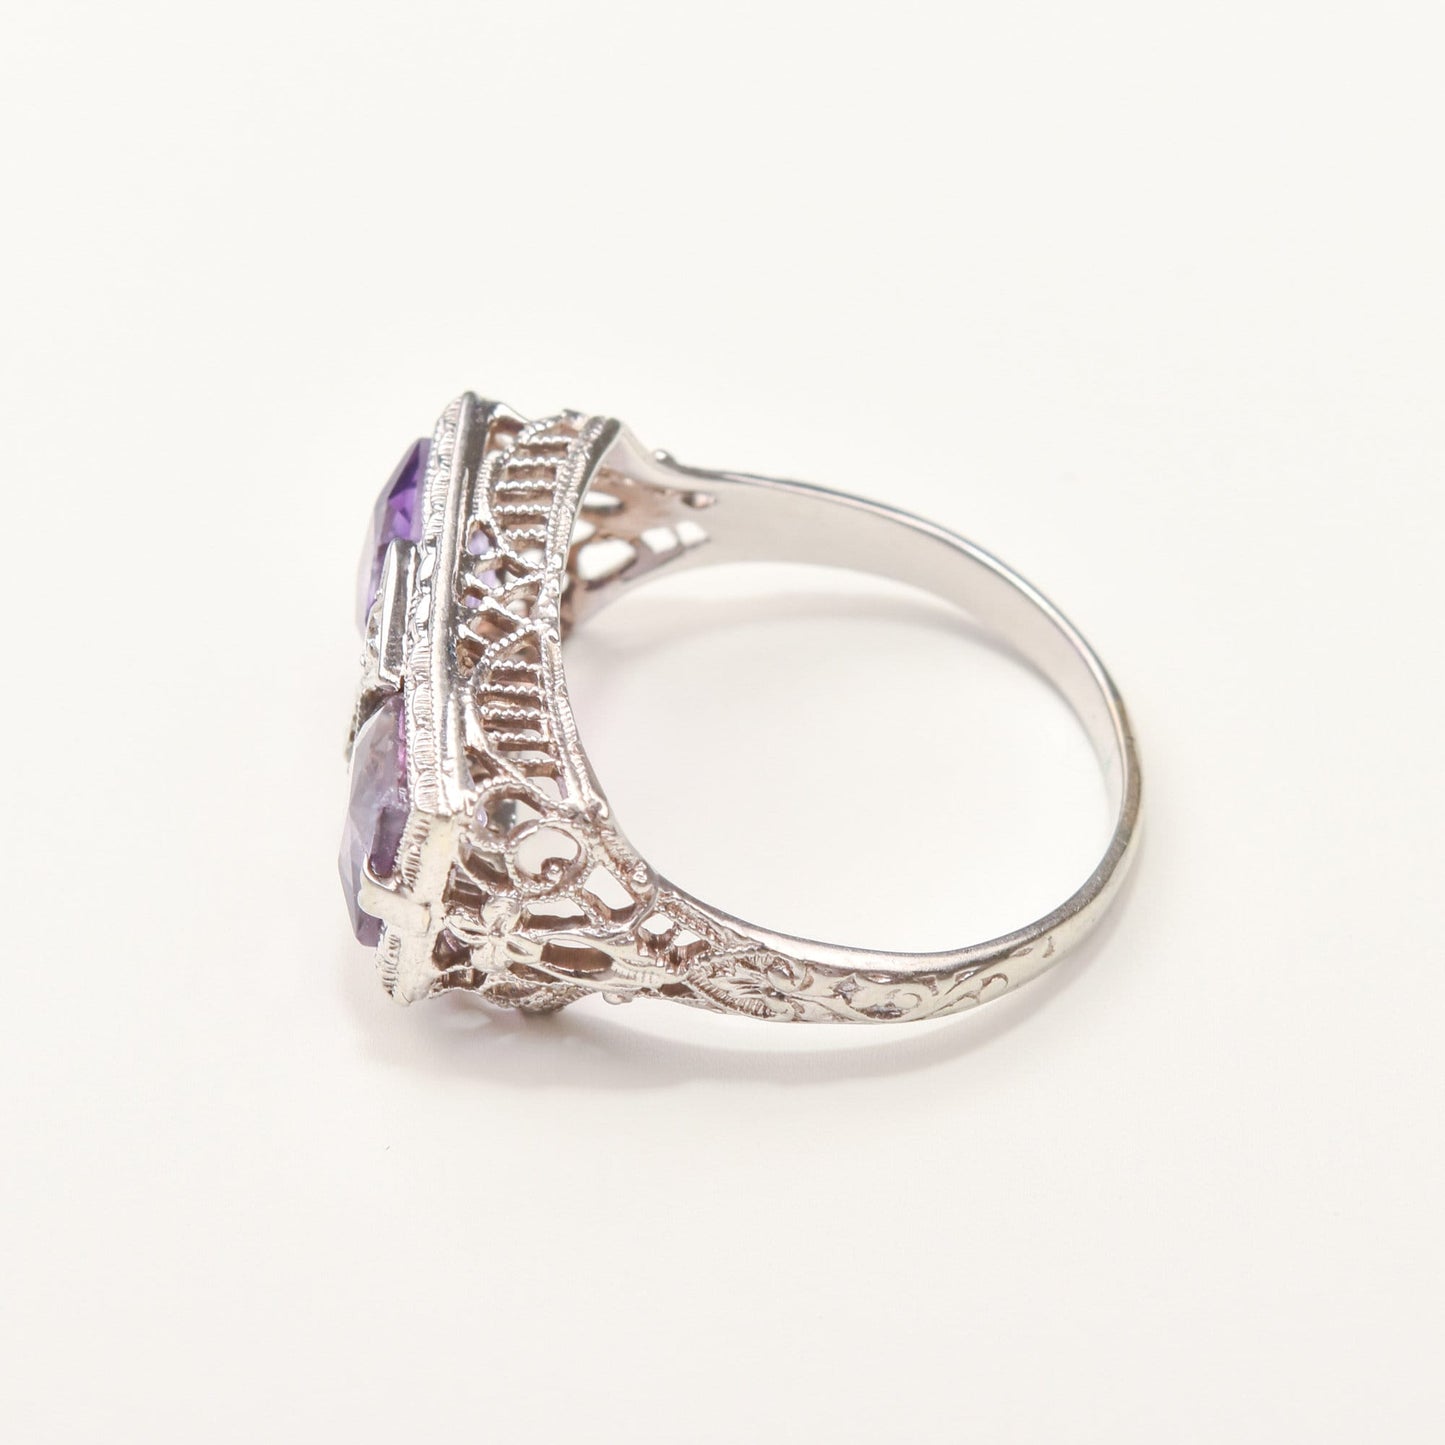 Art Deco 14K White Gold Diamond Amethyst Filigree Ring, Rectangular Dinner Ring, Size 6 1/4 US